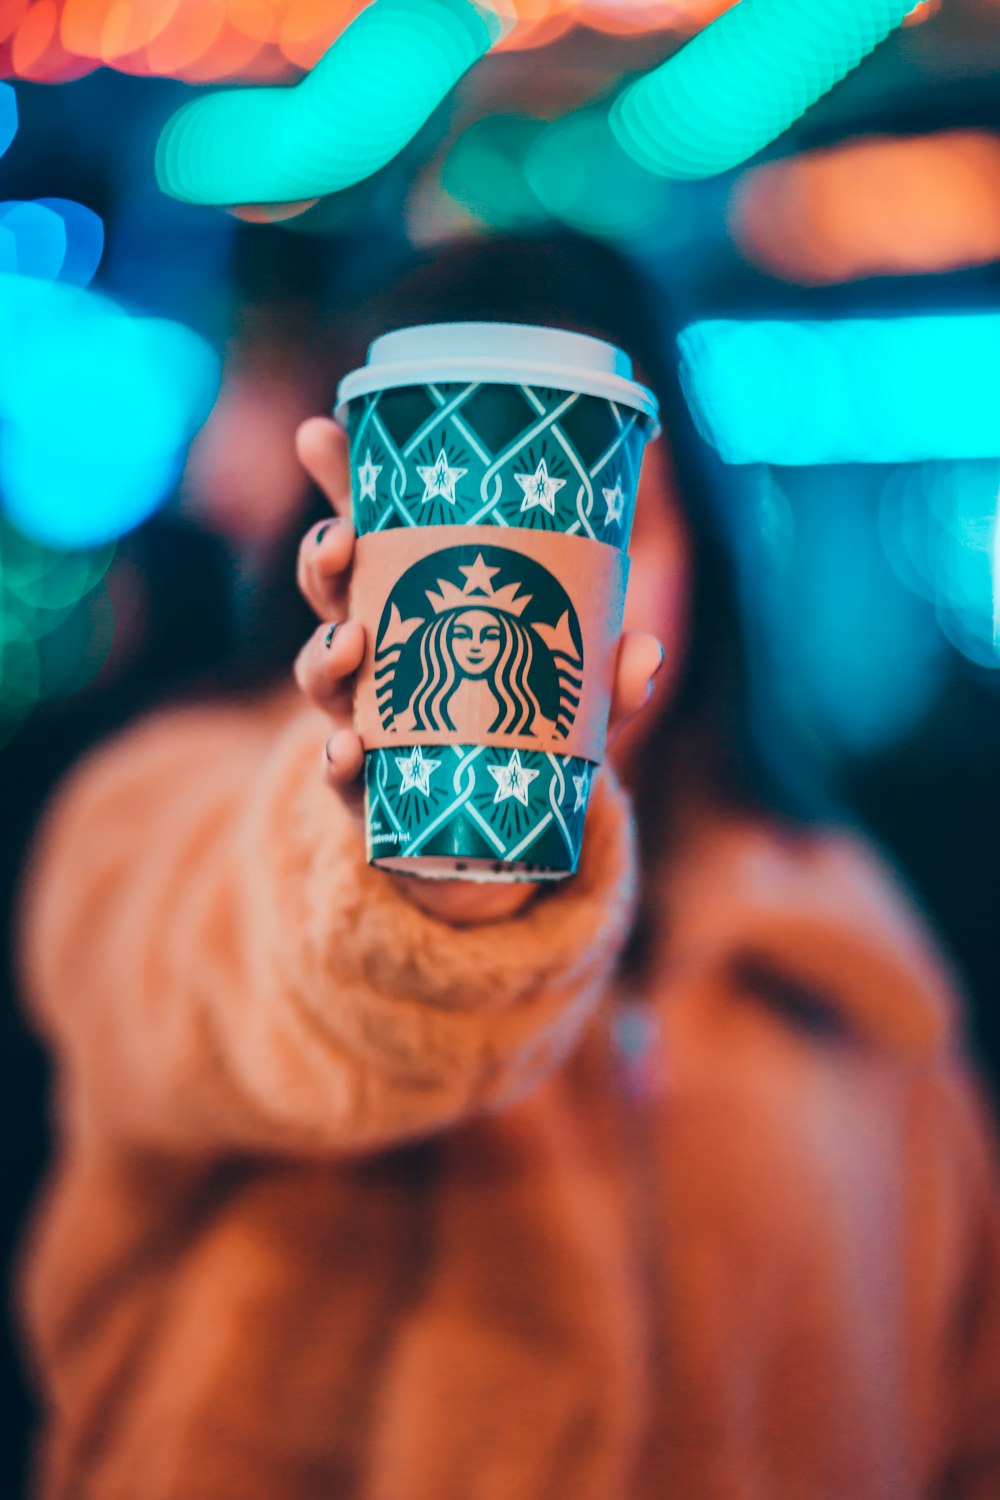 femme sur veste marron montrant une tasse à café Starbucks verte et brune